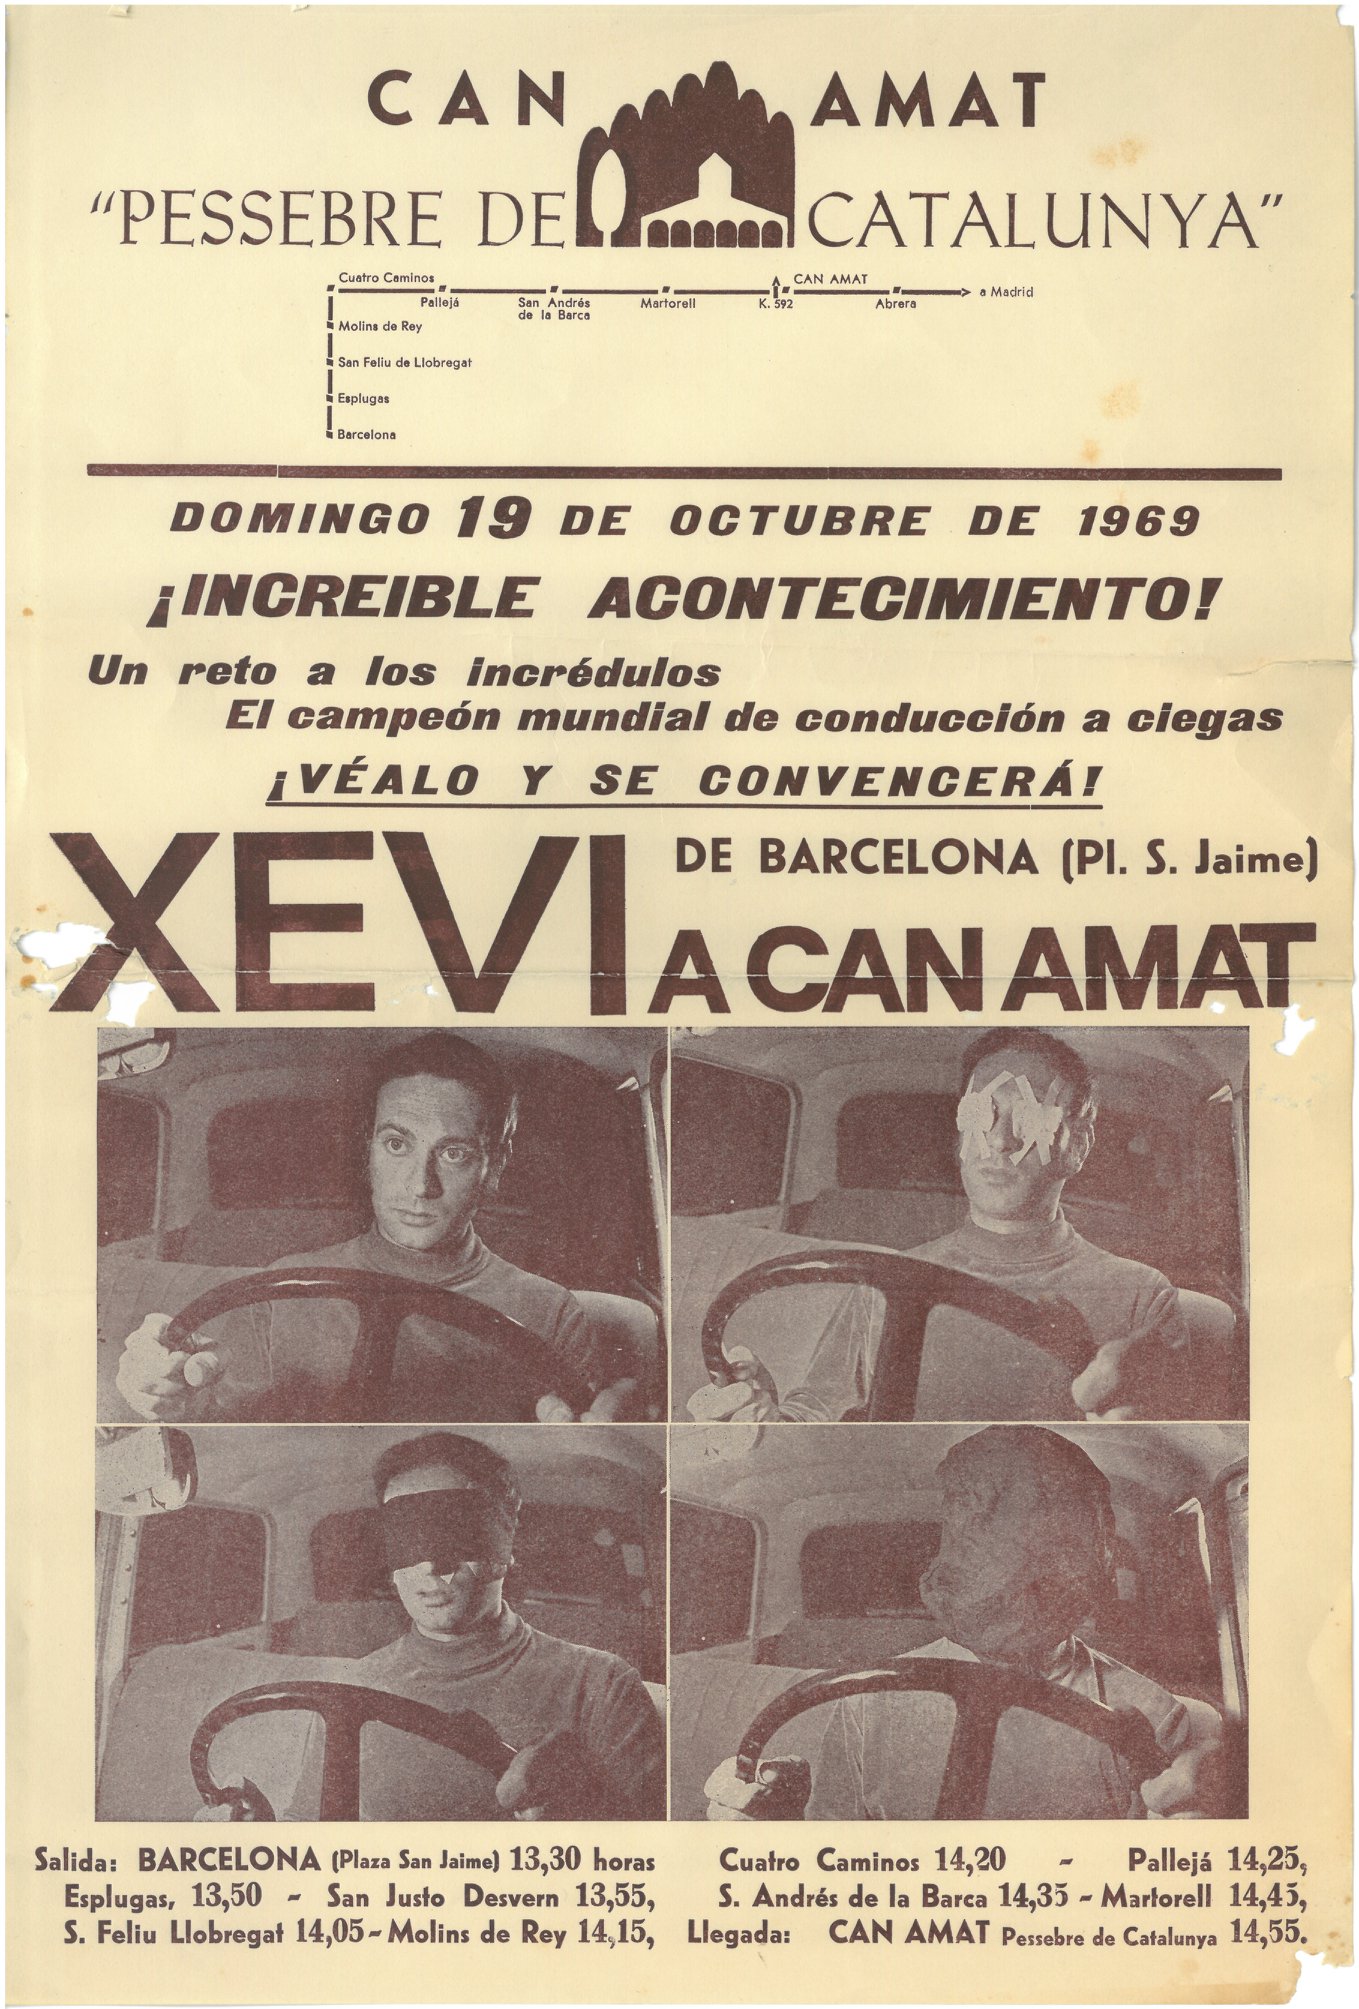 200130 Cessió duna còpia digital de fotos i doc i donació de cartells fulletons i postals de Xevi